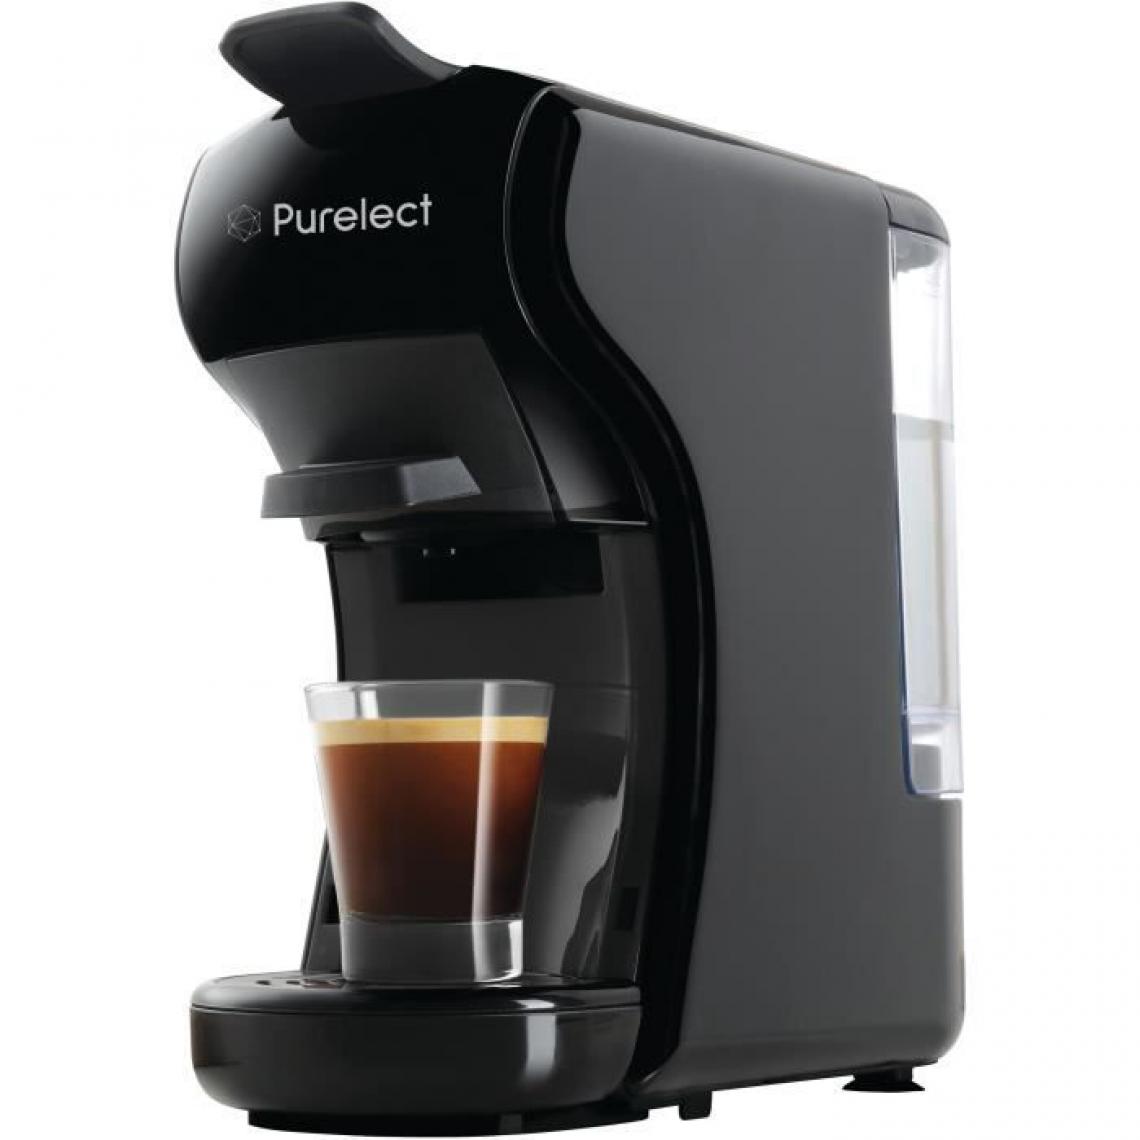 Purelect - PURELECT CK39 Machine a café avec adaptateurs compatibles capsules Nespresso, Dolce Gusto, ESE et café moulu - Expresso - Cafetière